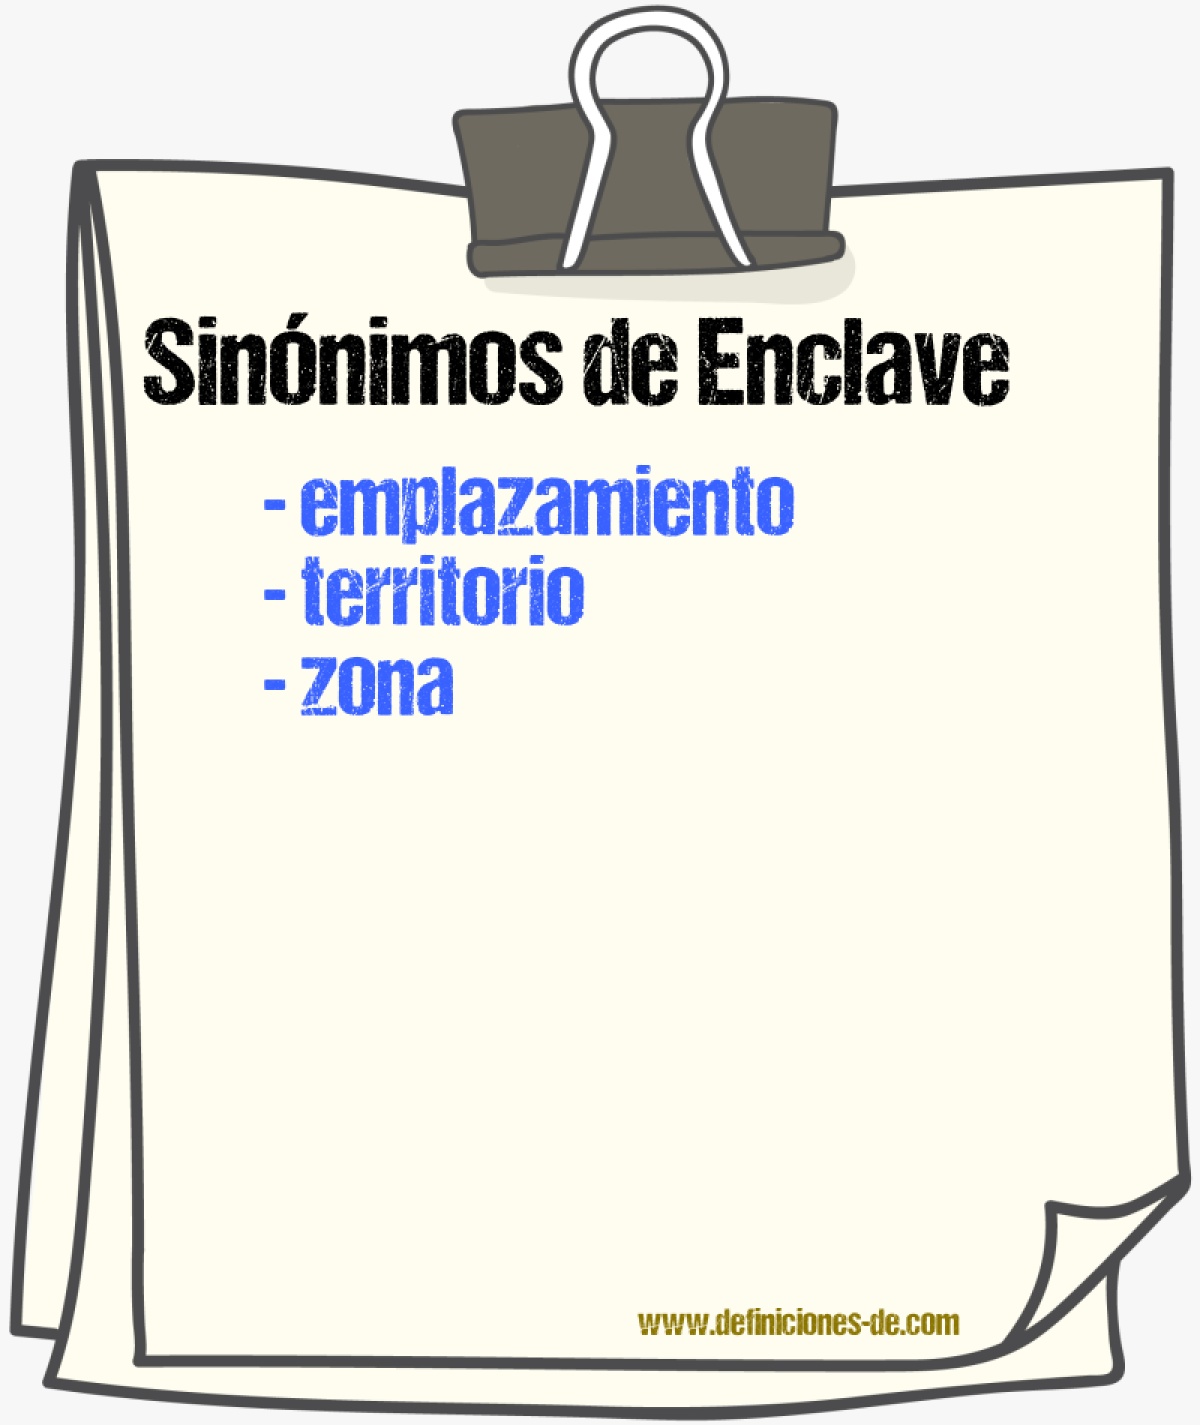 Sinónimos de enclave